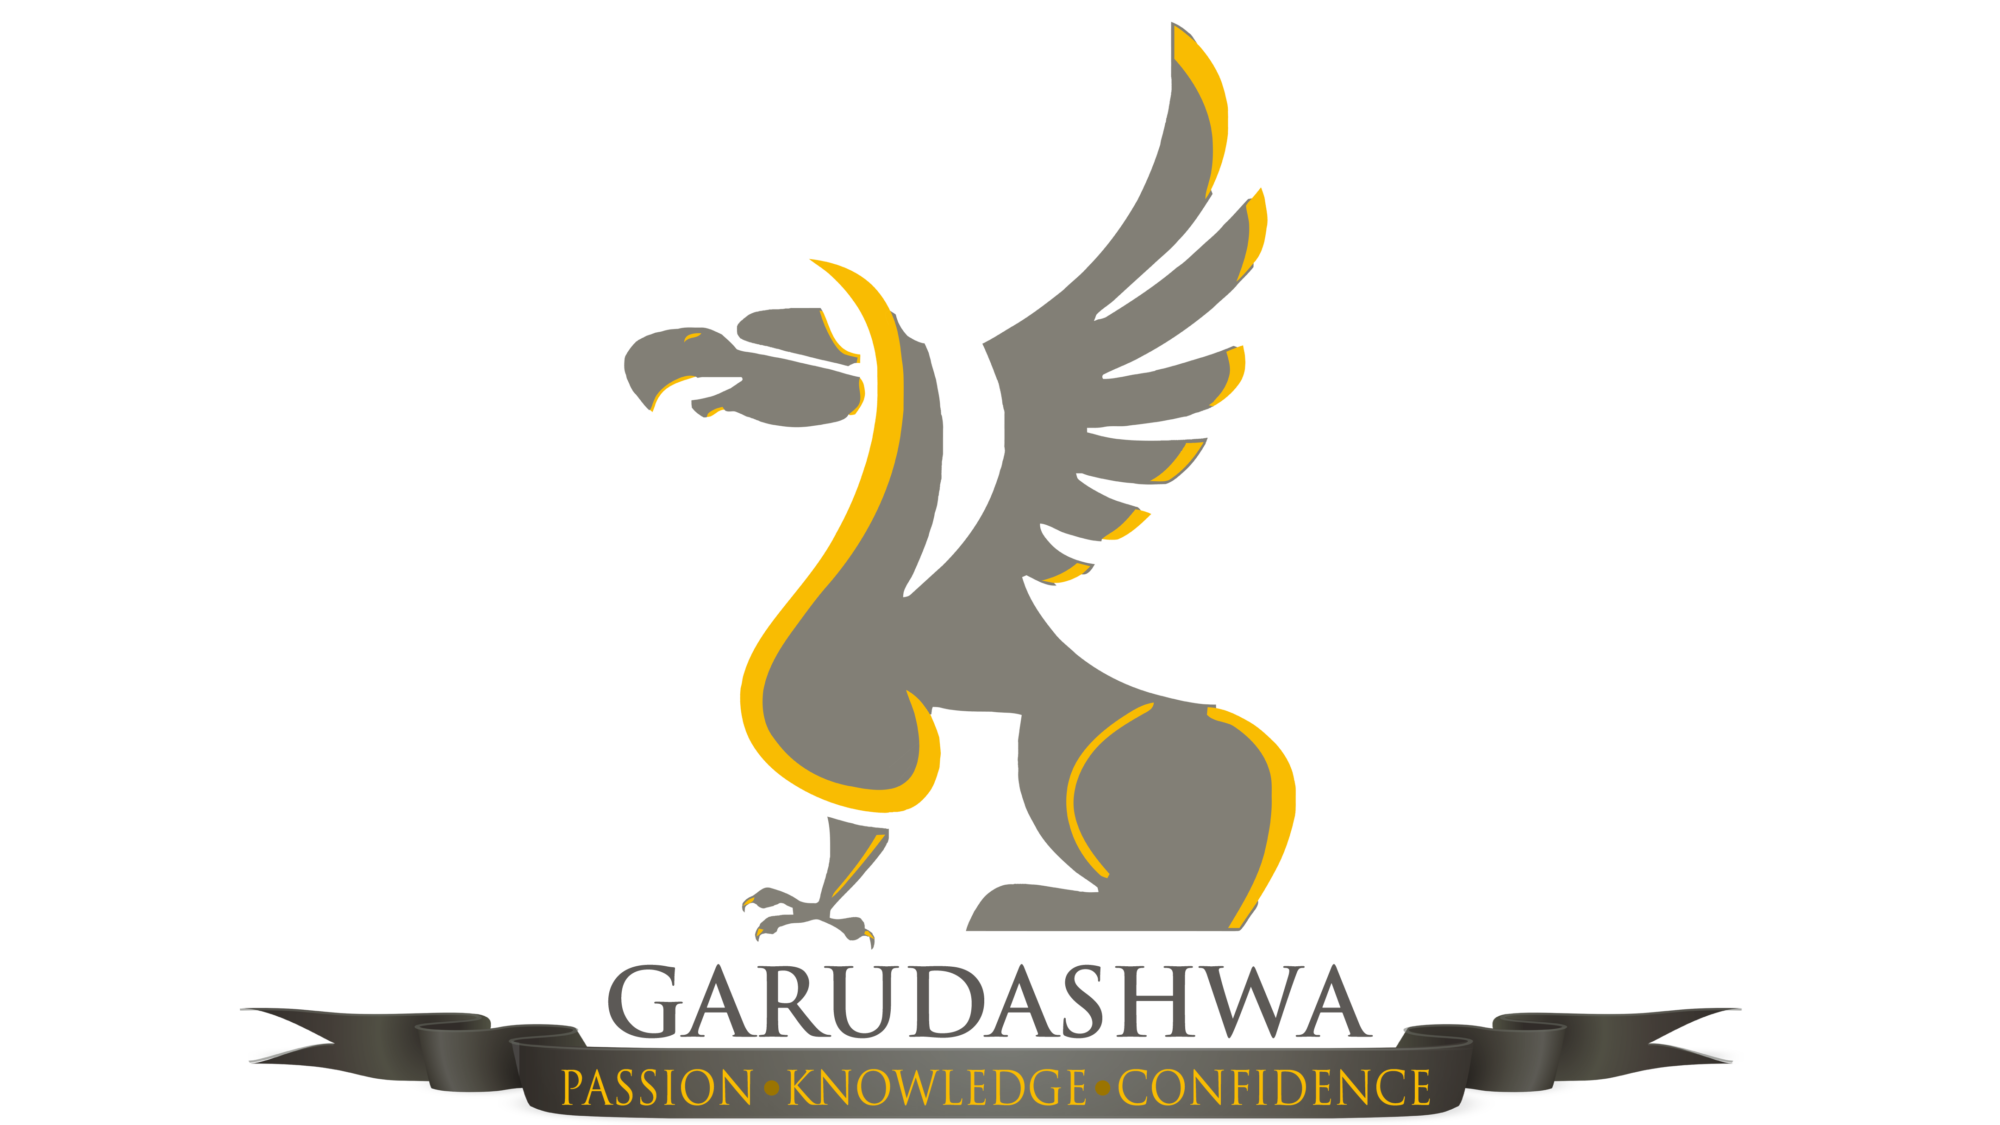 Team Garudashwa